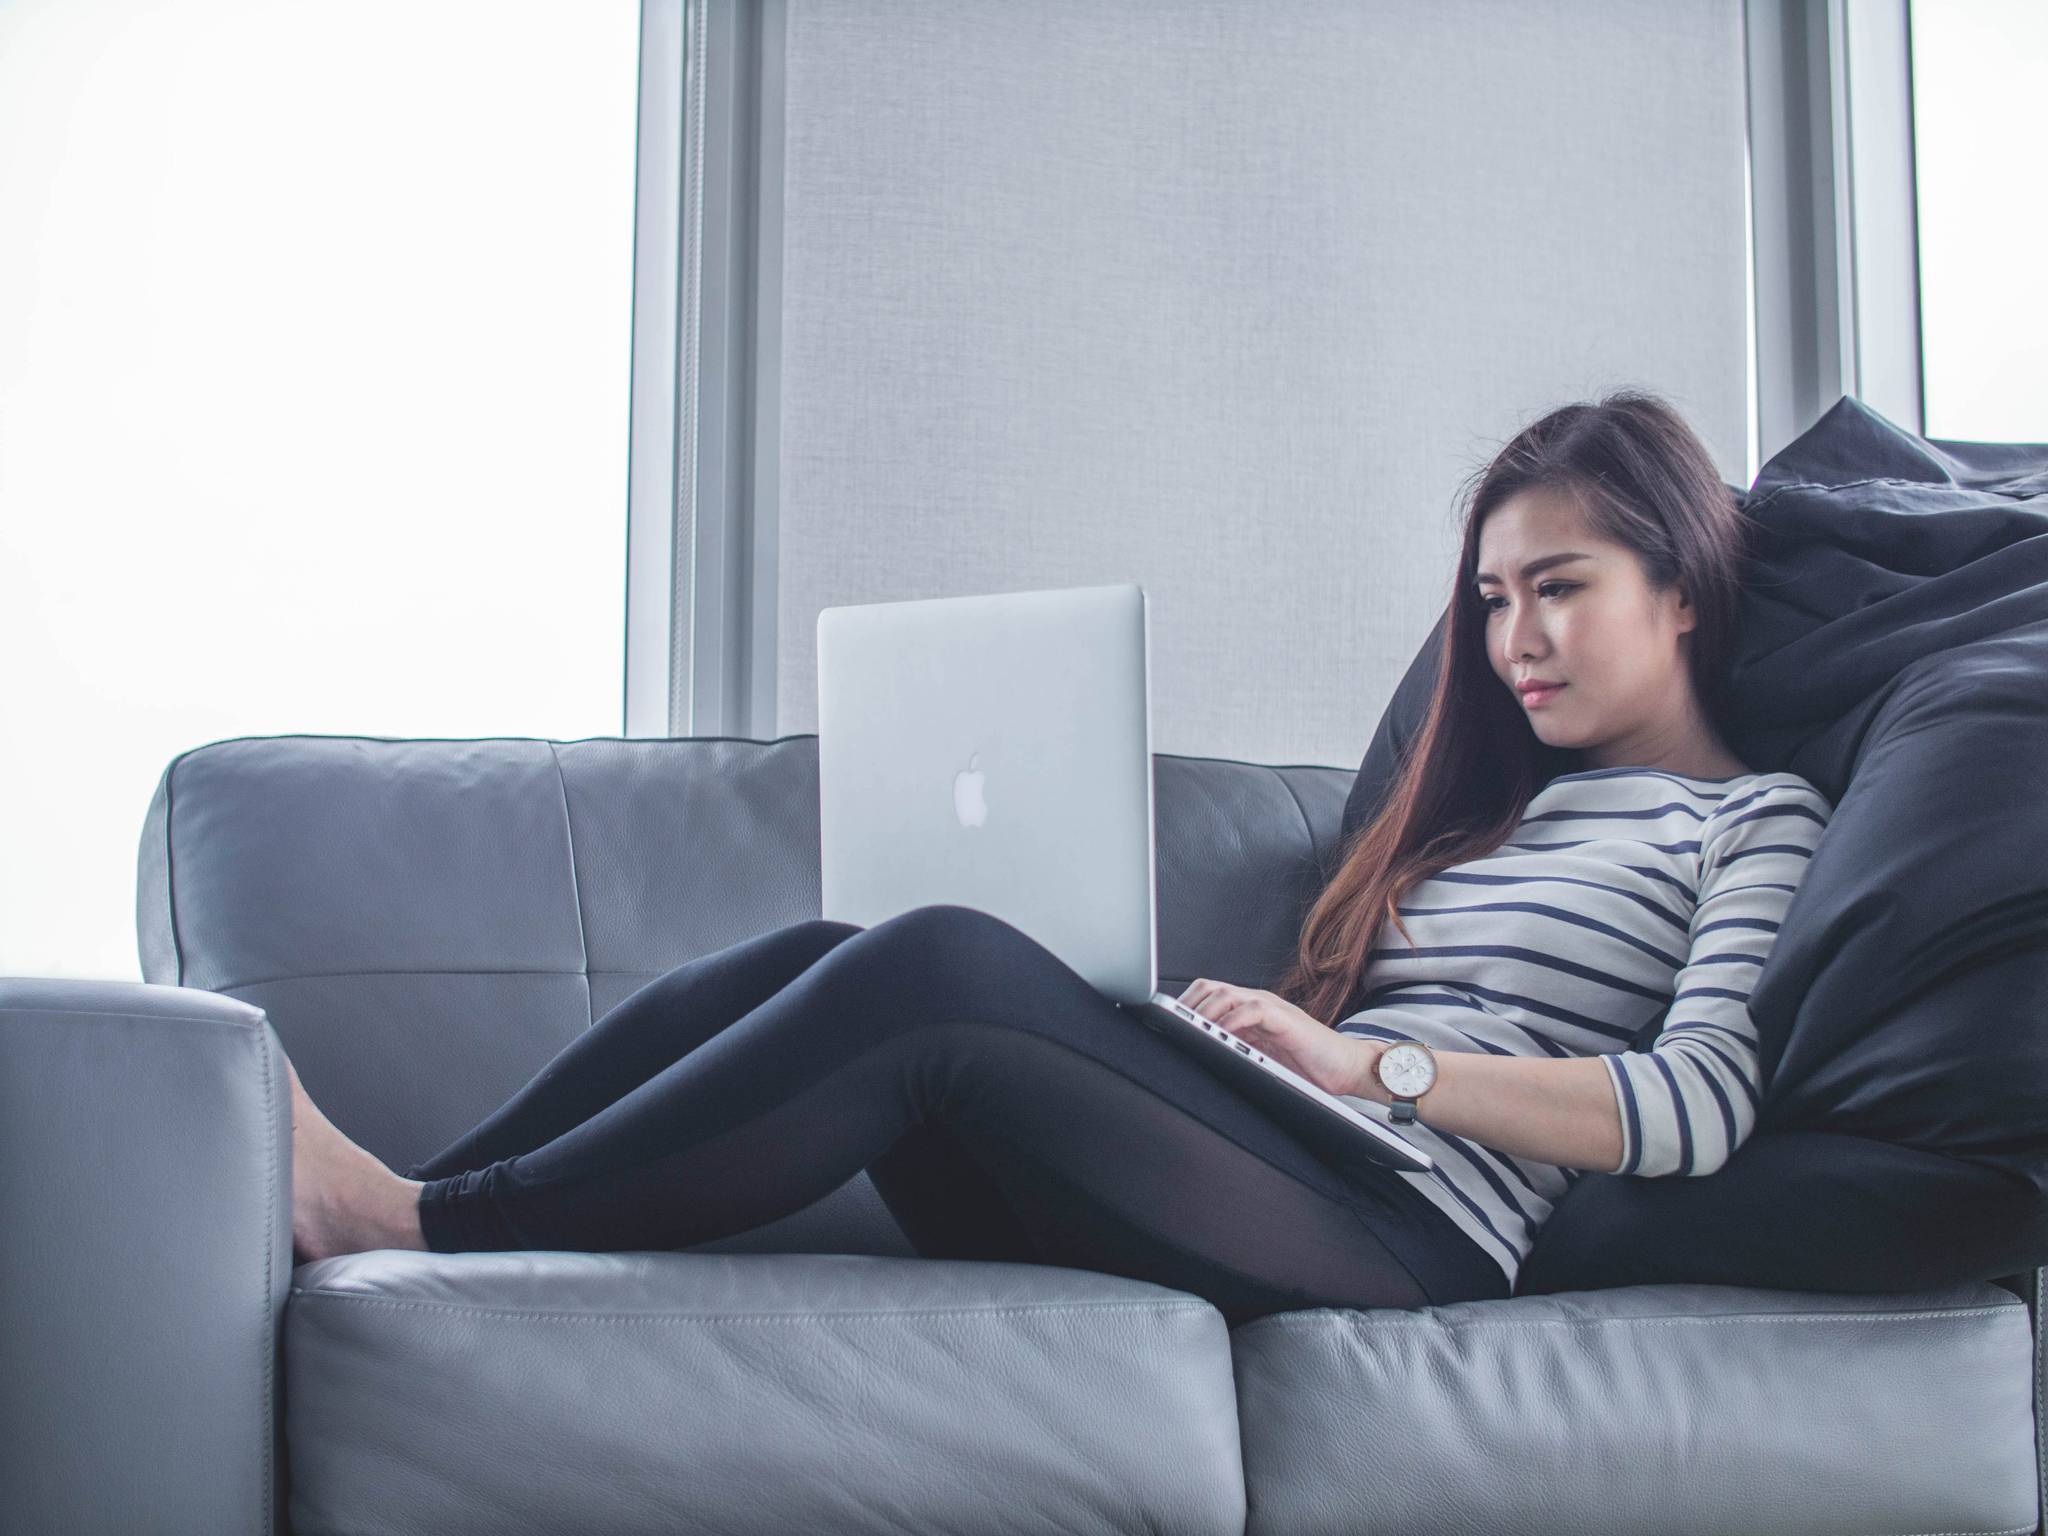 US women seek health advice from doctors on Reddit